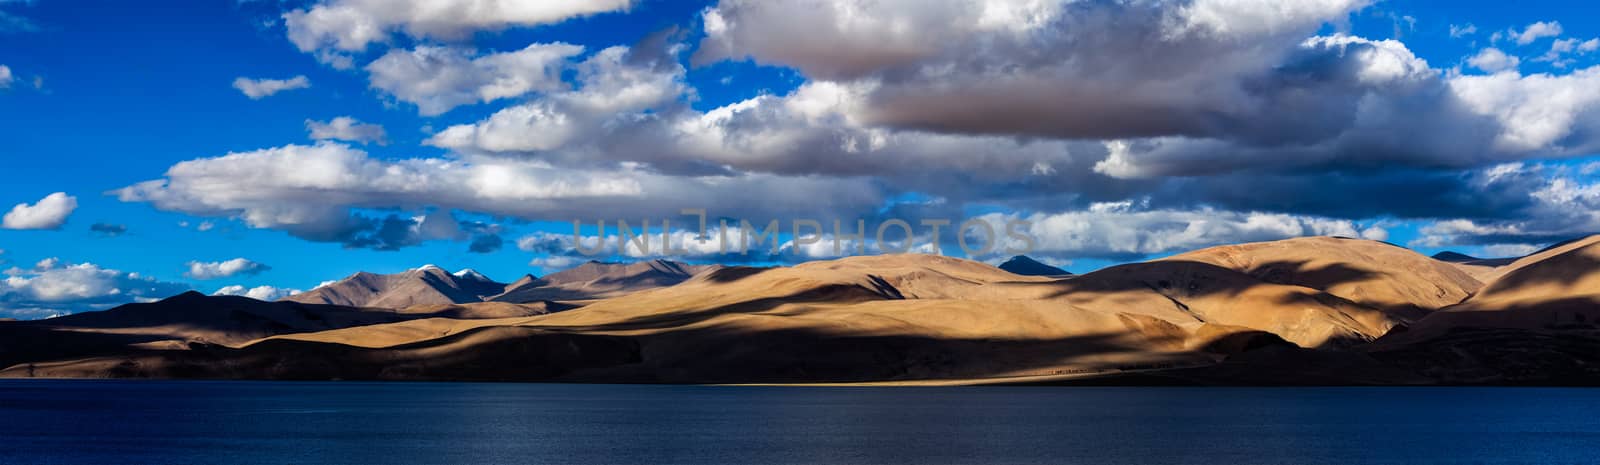 Panorama of Himalayan lake Tso Moriri. Ladakh, India by dimol